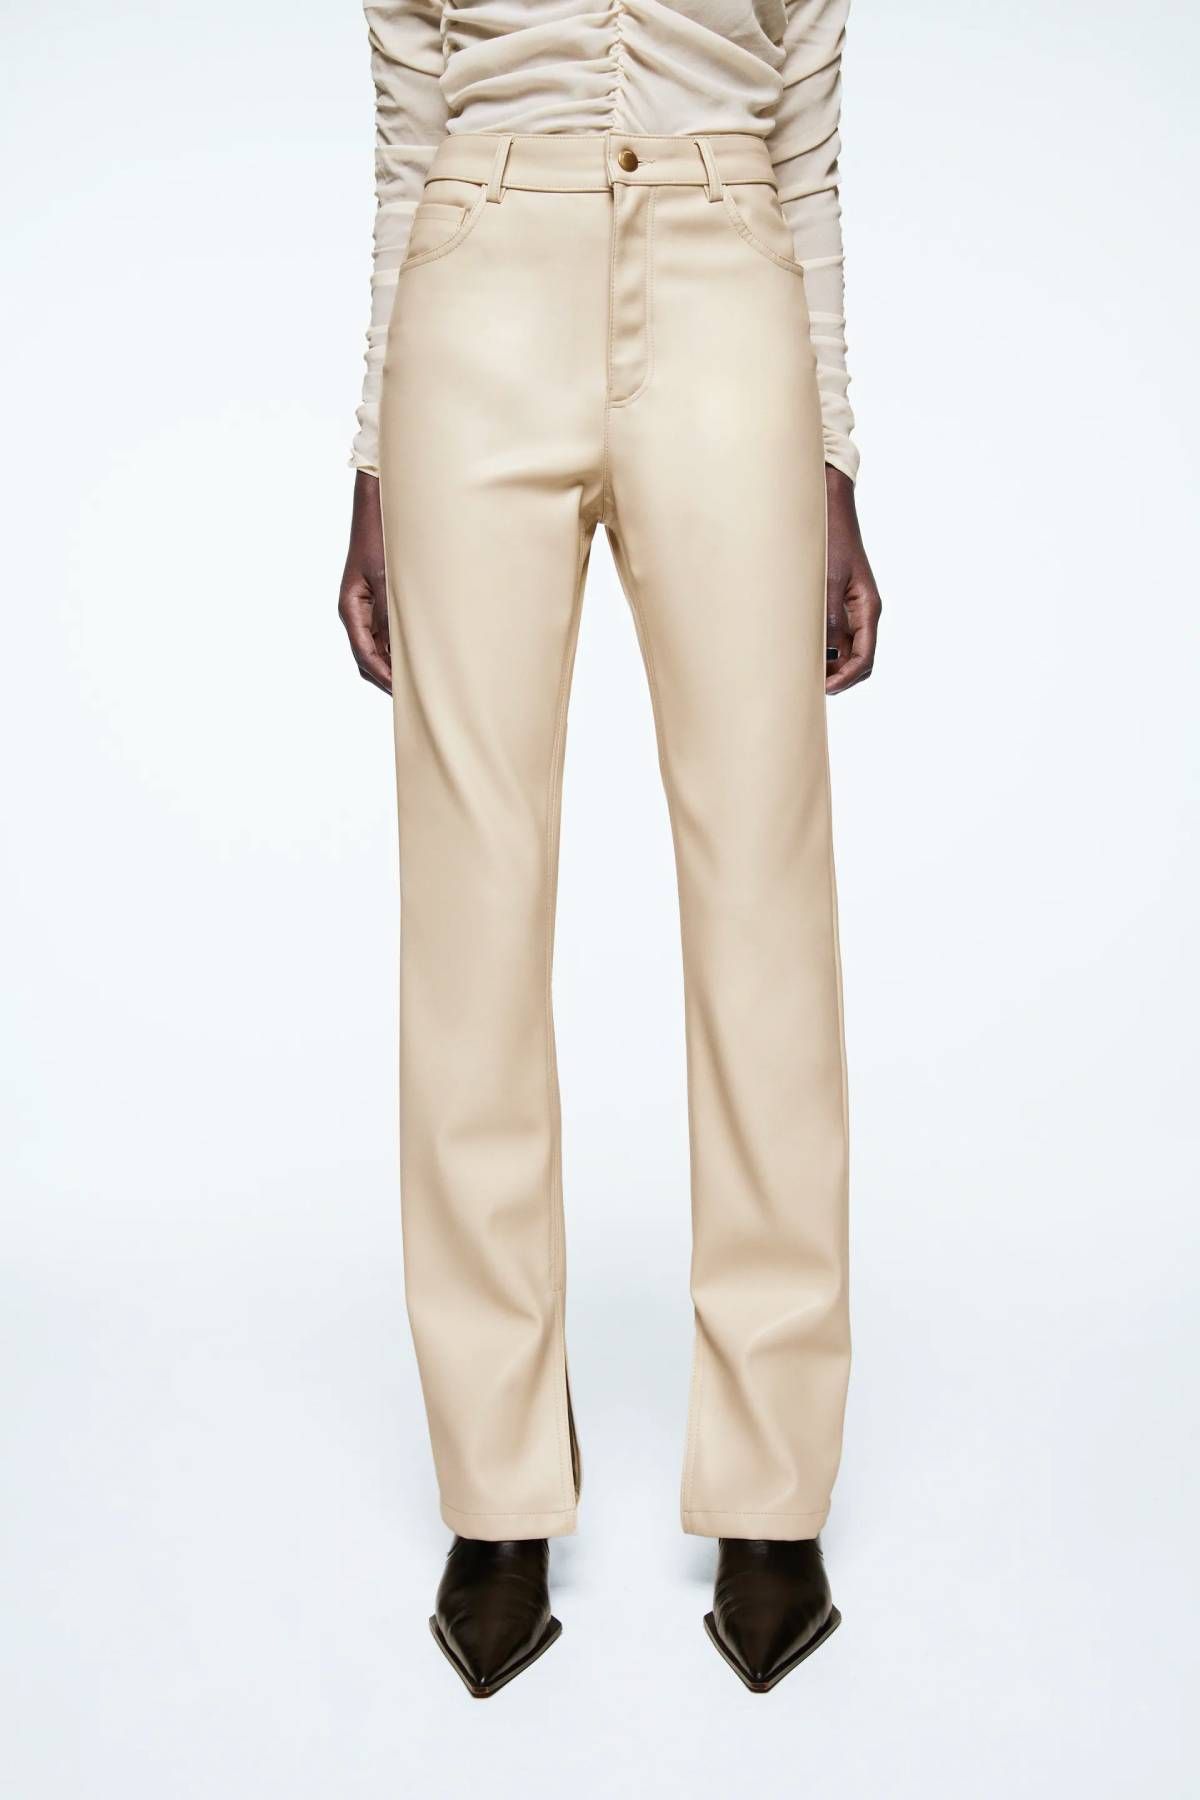 Pantalón efecto cuero con abertura en el bajo, en tono blanco roto de Zara